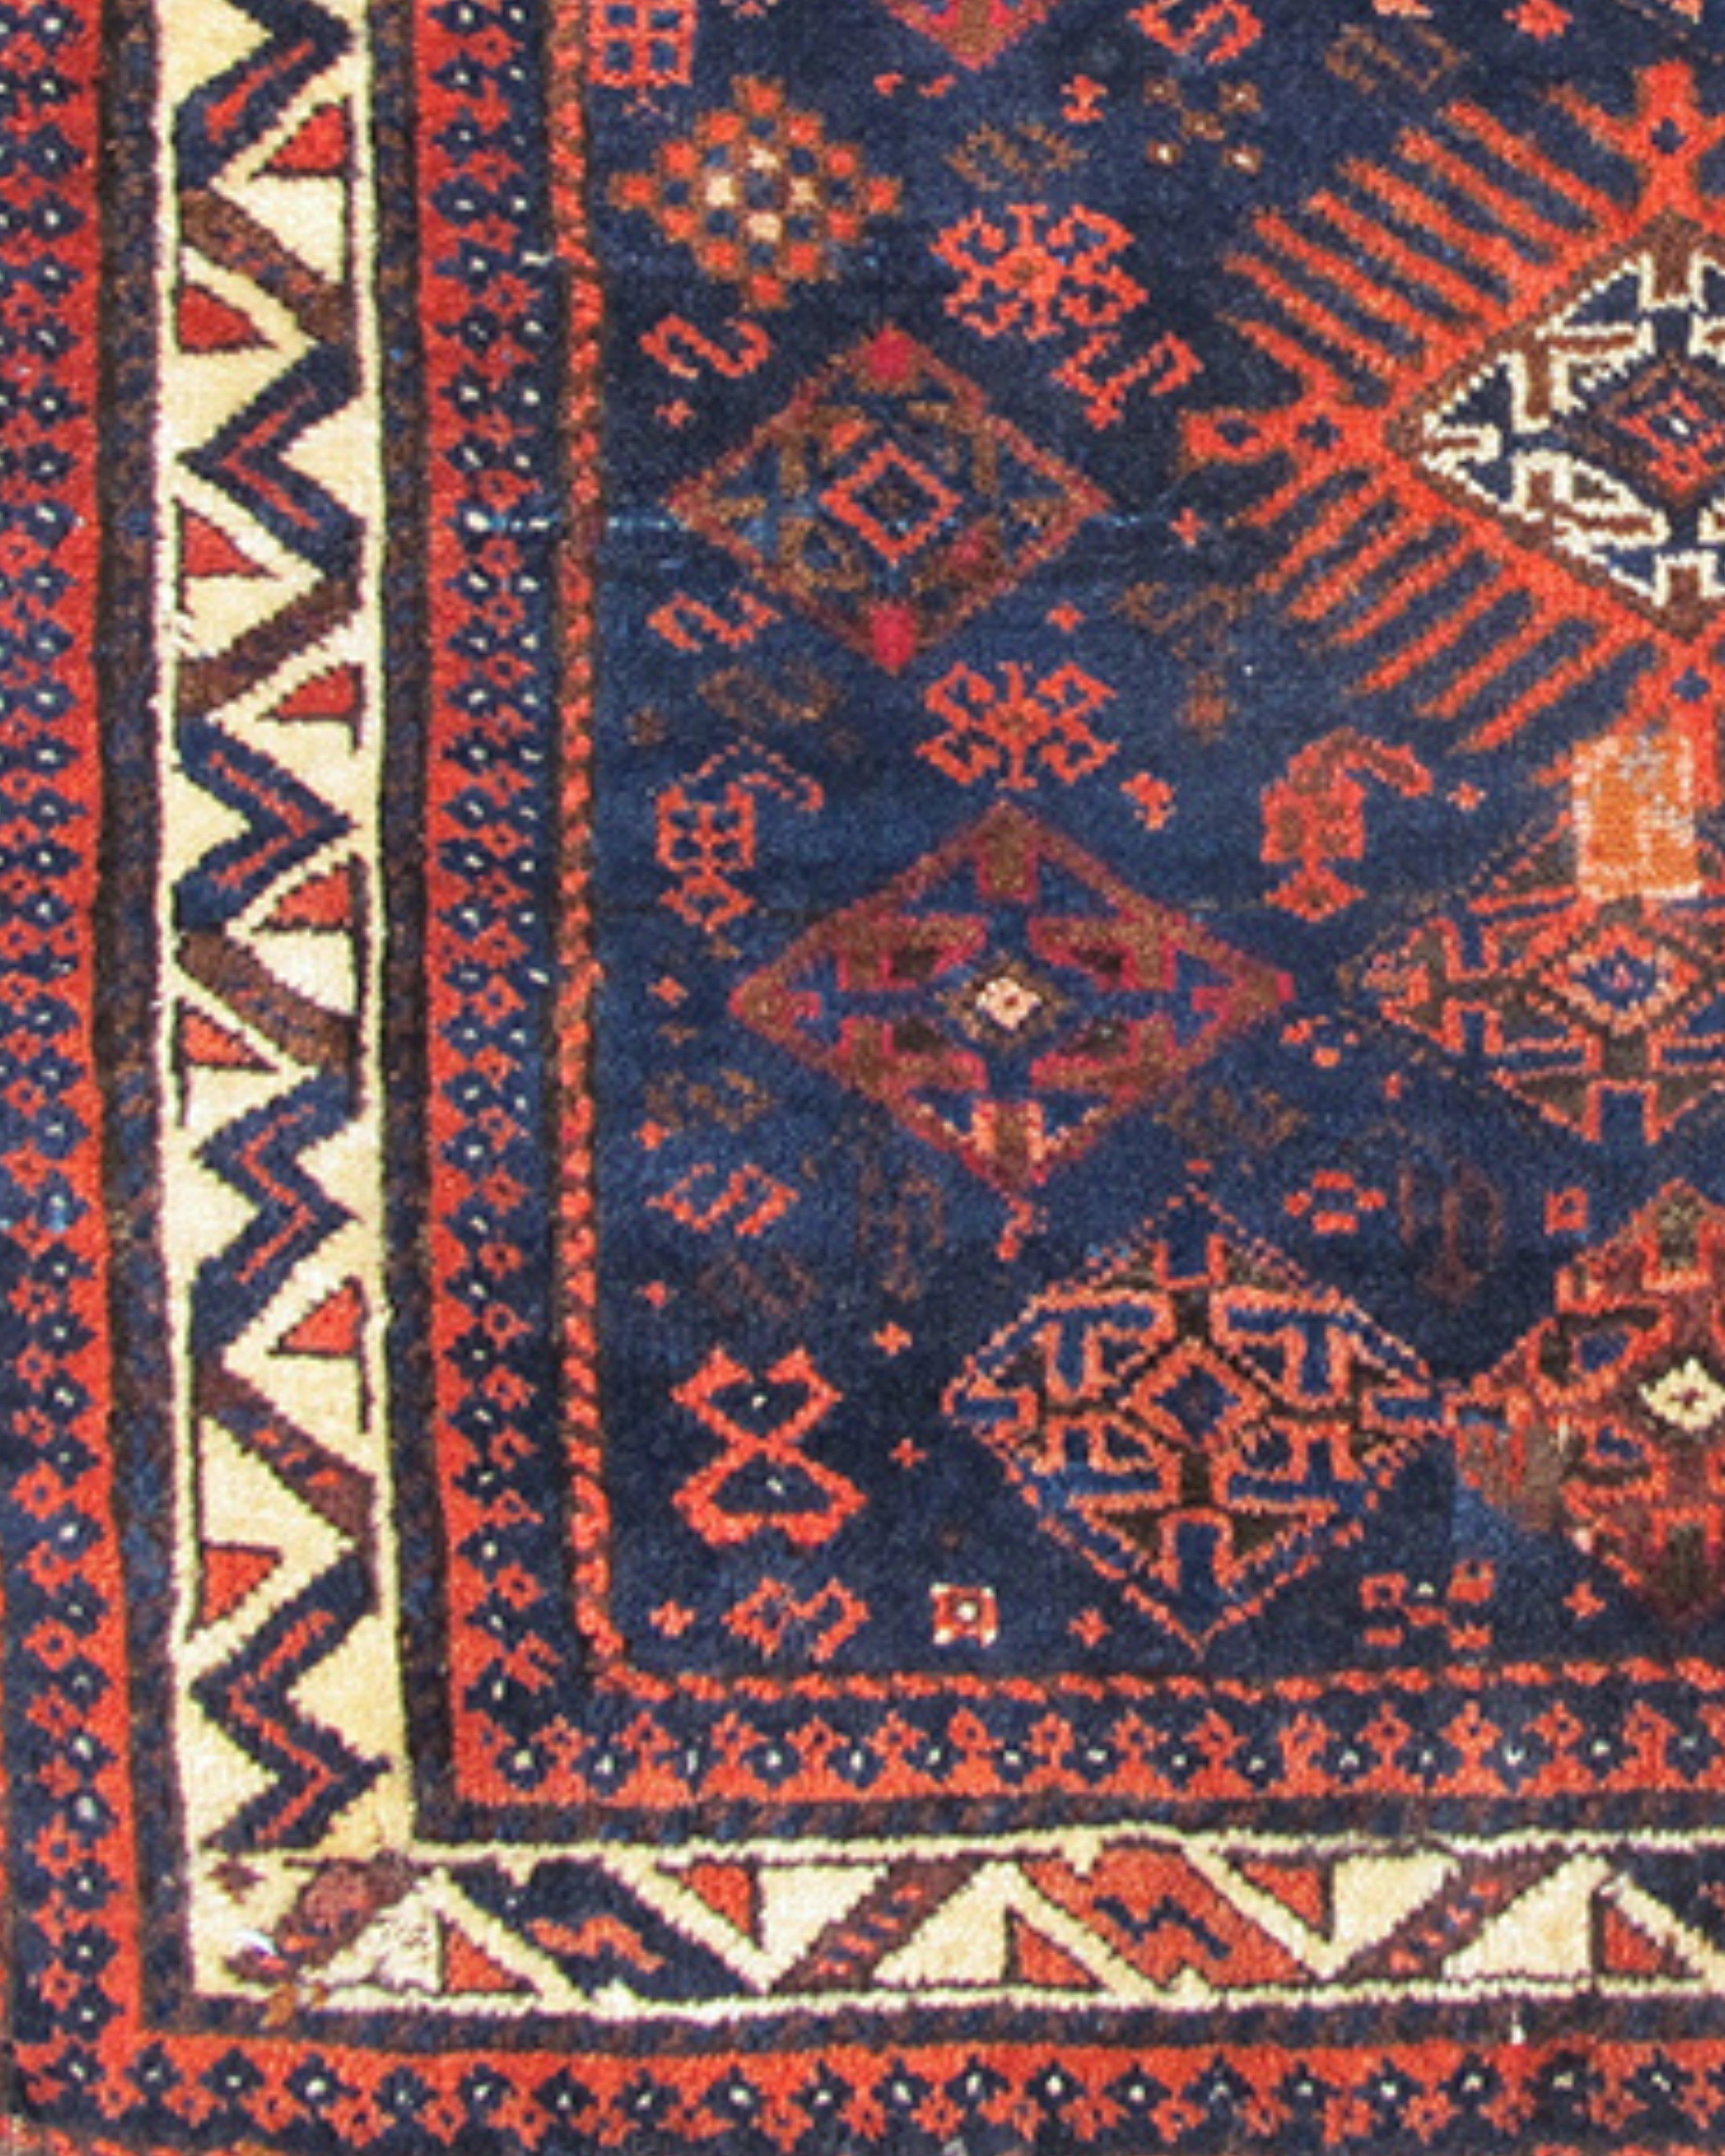 Antiker persischer Baluch-Teppich mit Bagface-Muster, spätes 19. Jahrhundert

Zusätzliche Informationen: 
Abmessung: 2'9